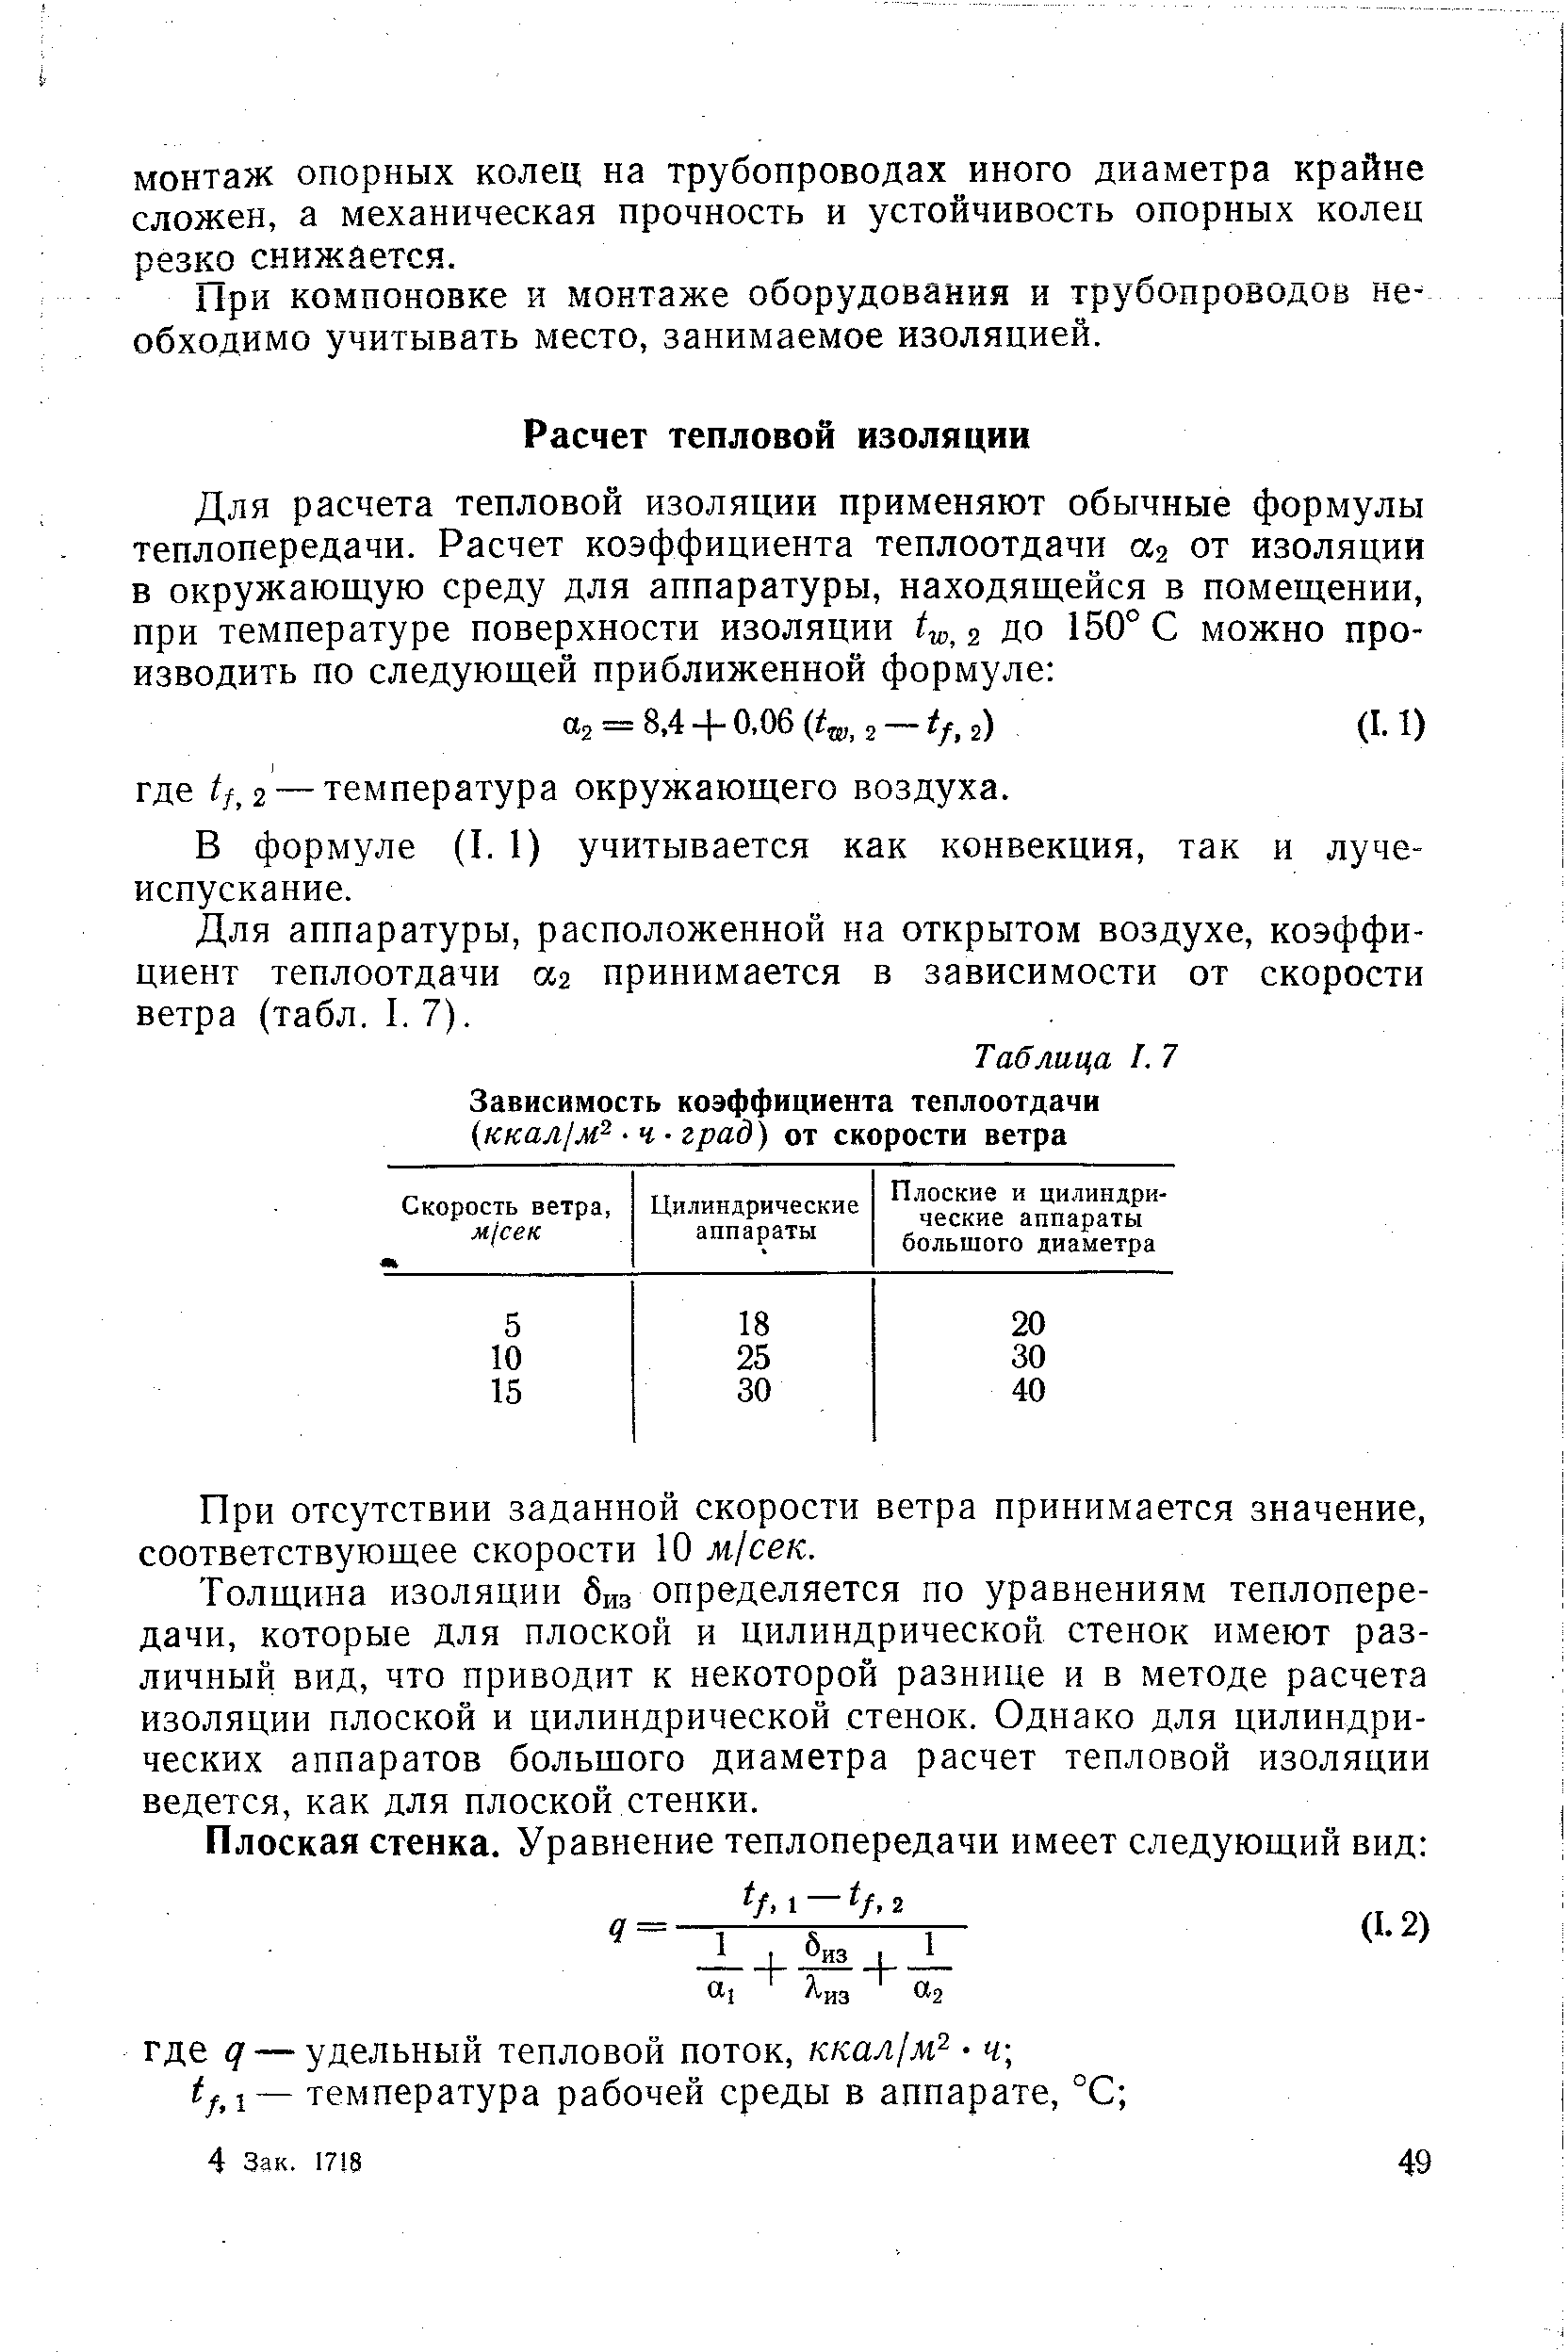 В формуле (I. 1) учитывается как конвекция, так и лучеиспускание.